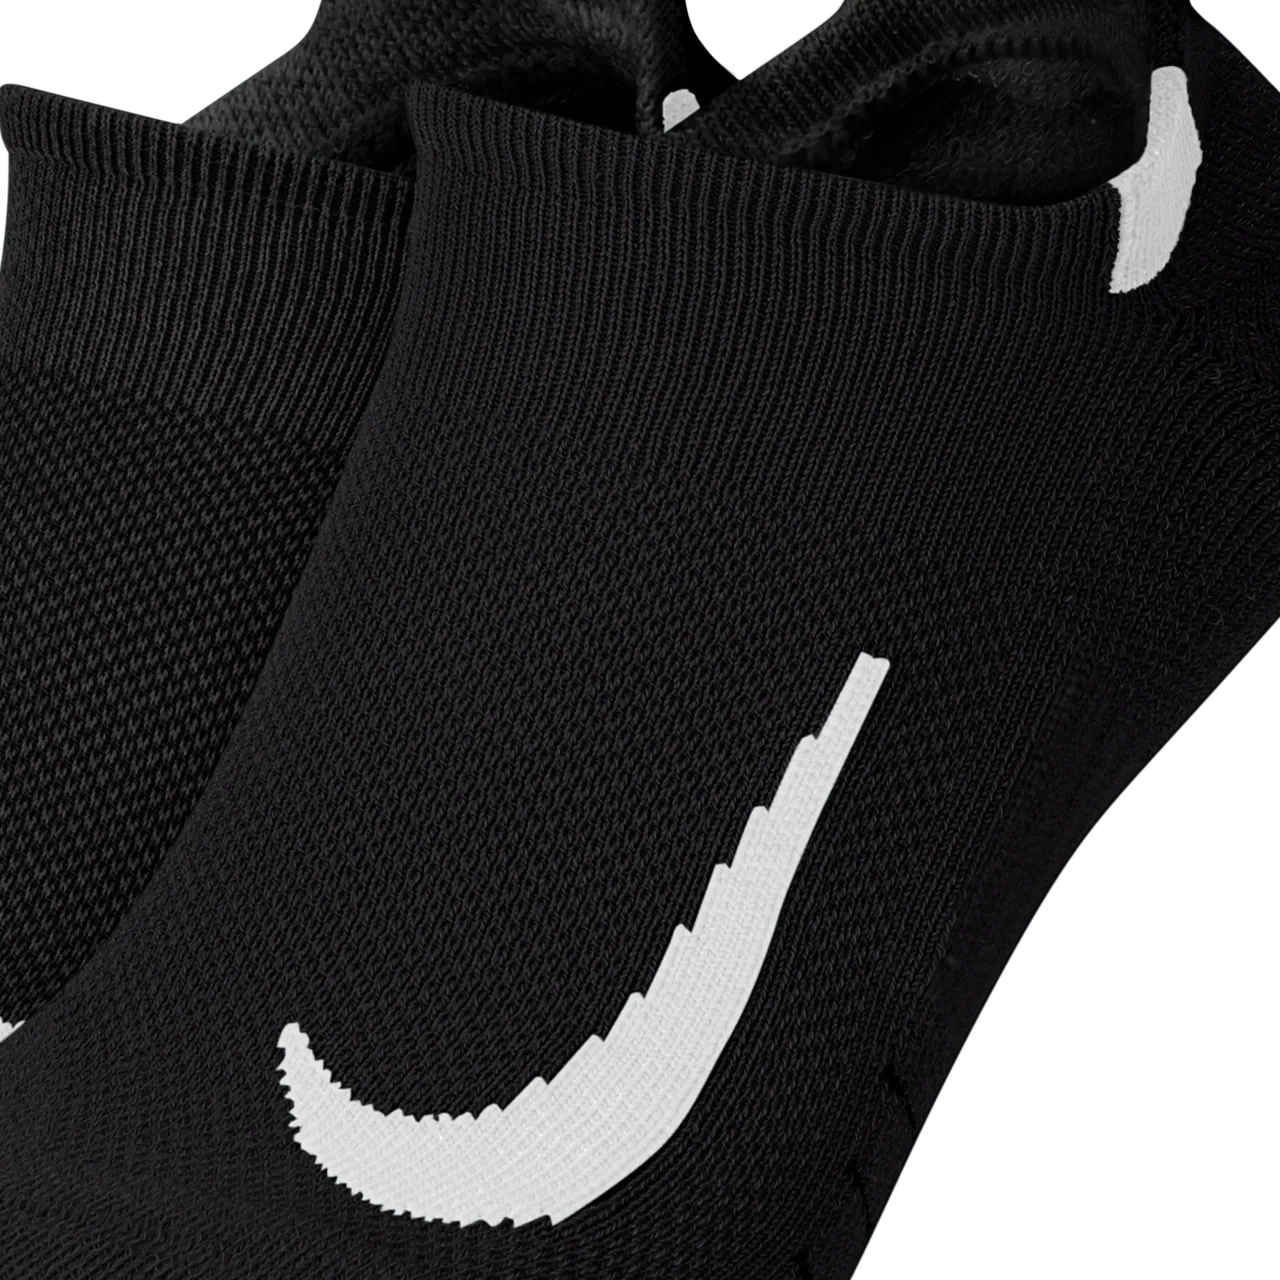 Nike Multiplier No-Show hardloopsokken (2 paar) - Zwart